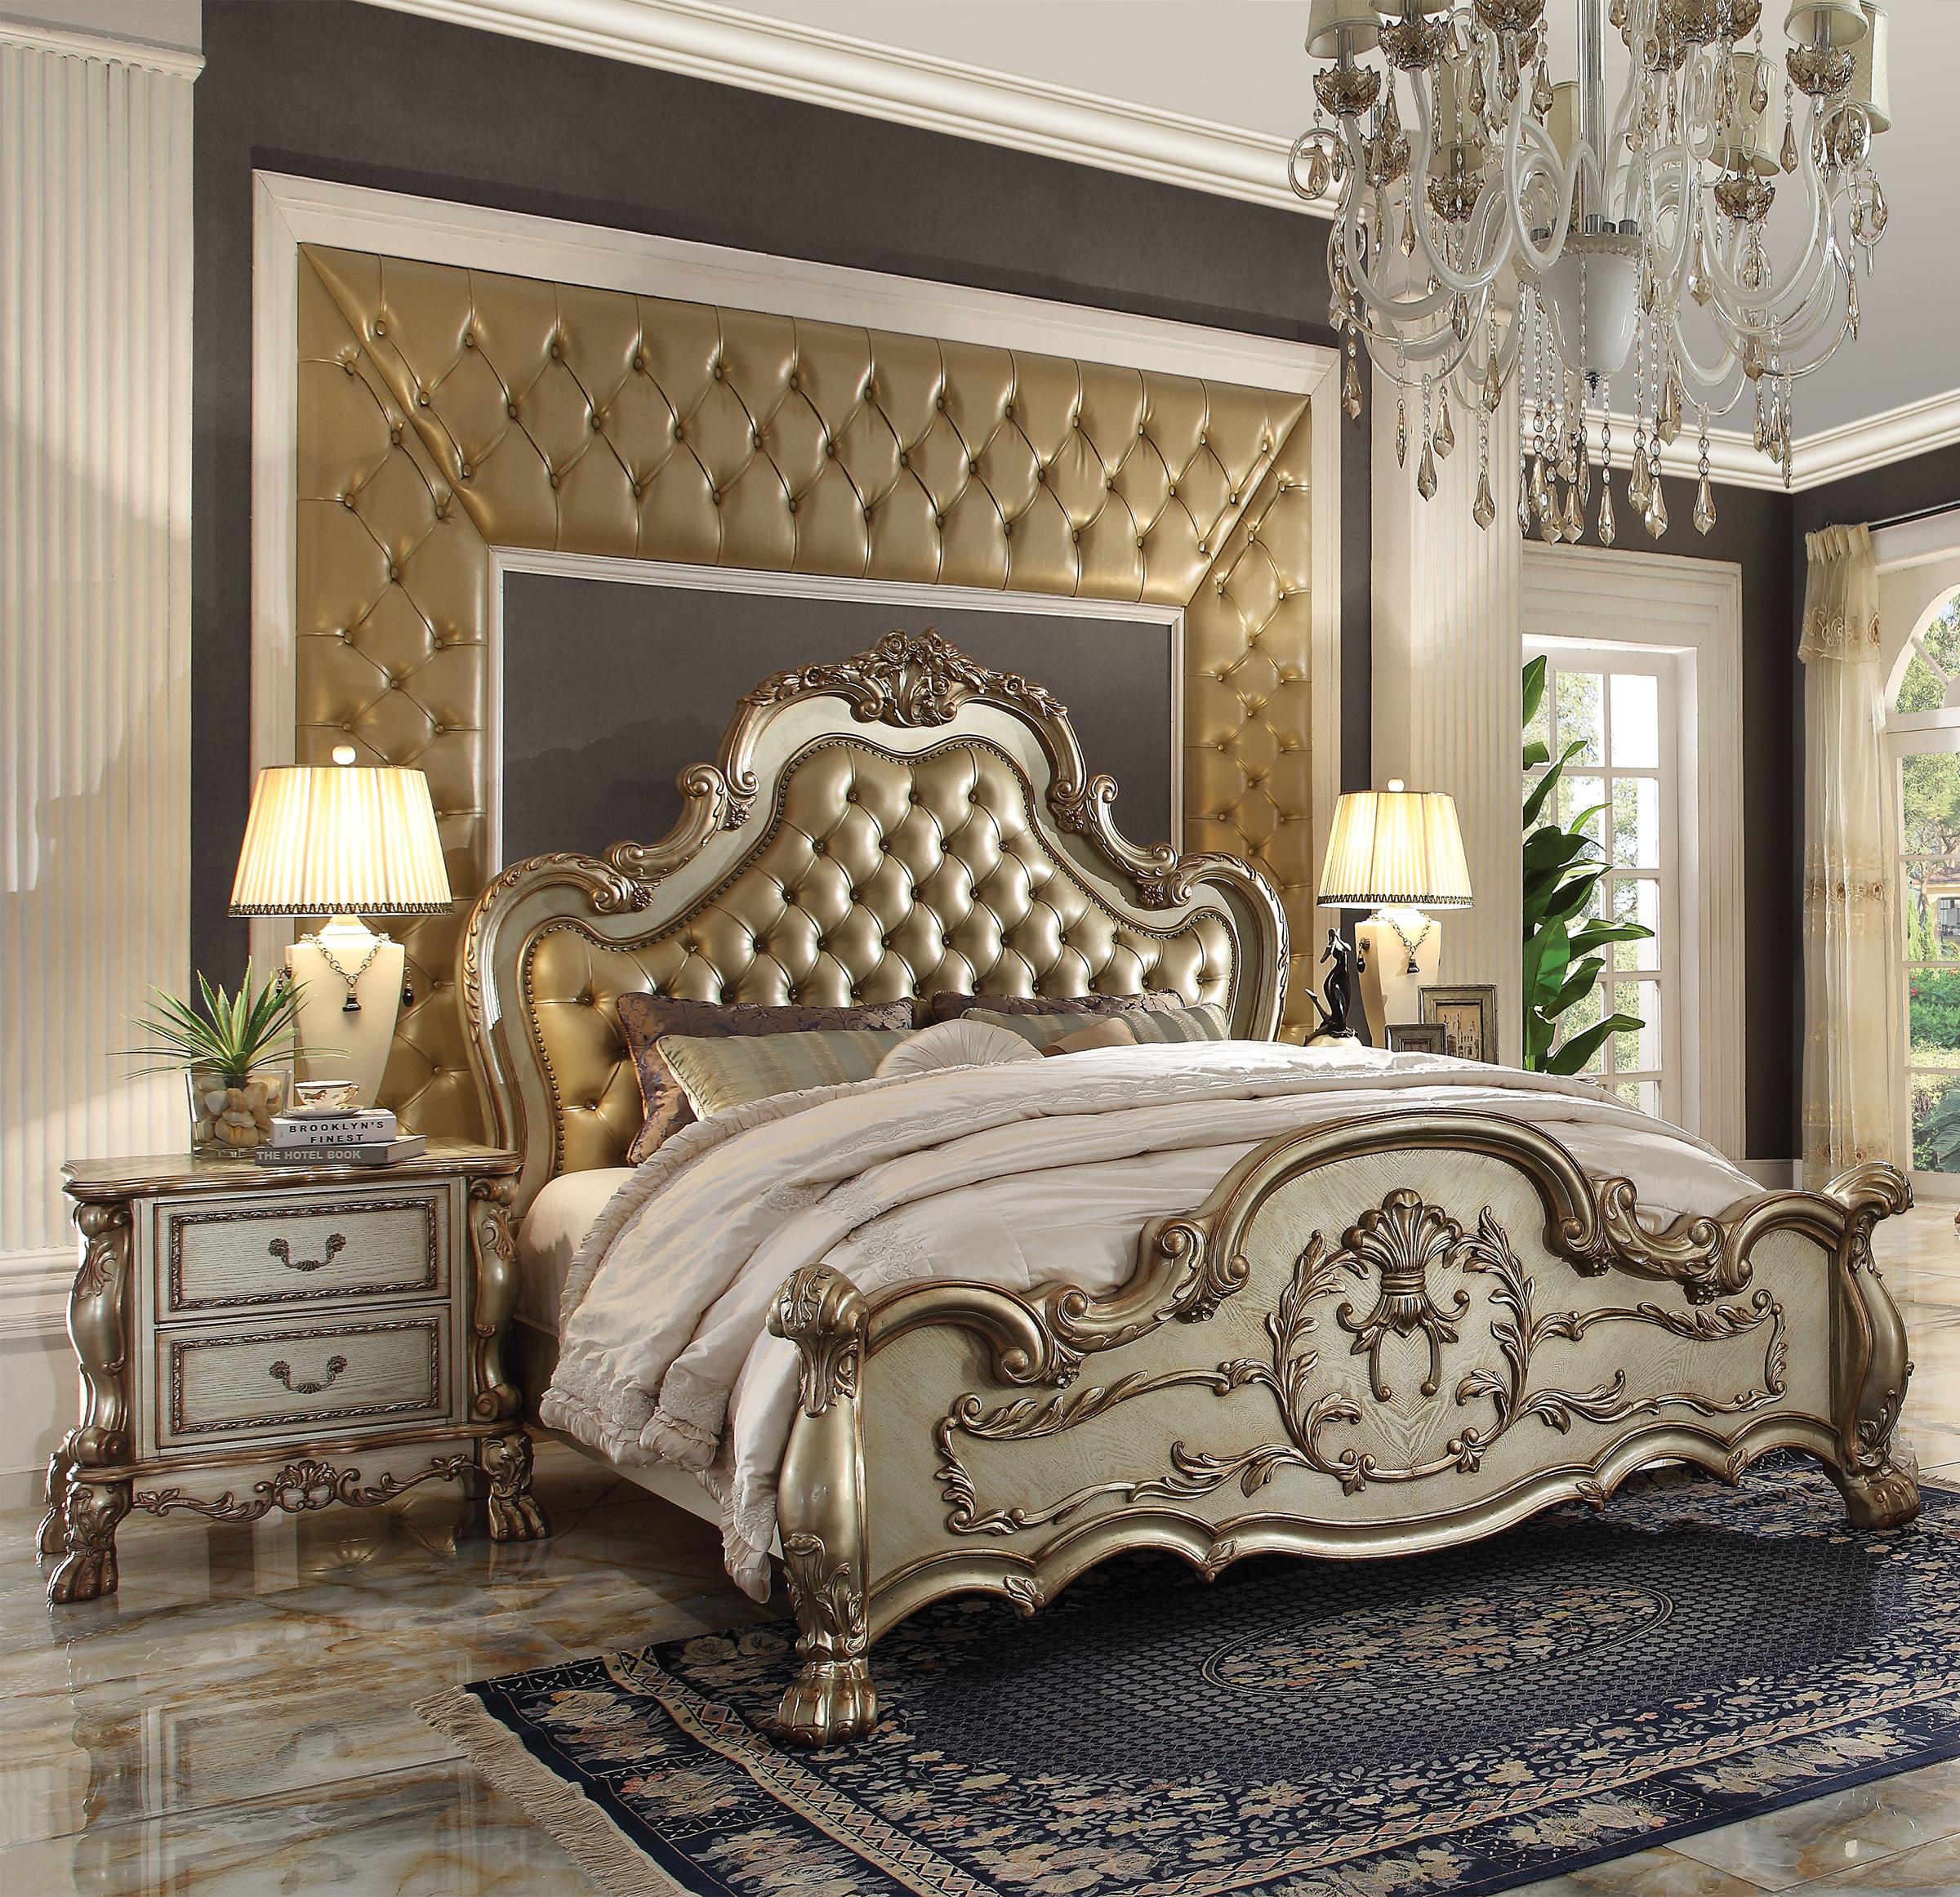 

    
Tufted Gold Patina Queen Bedroom Set 4Pcs Dresden 23160Q Acme Victorian Classic
